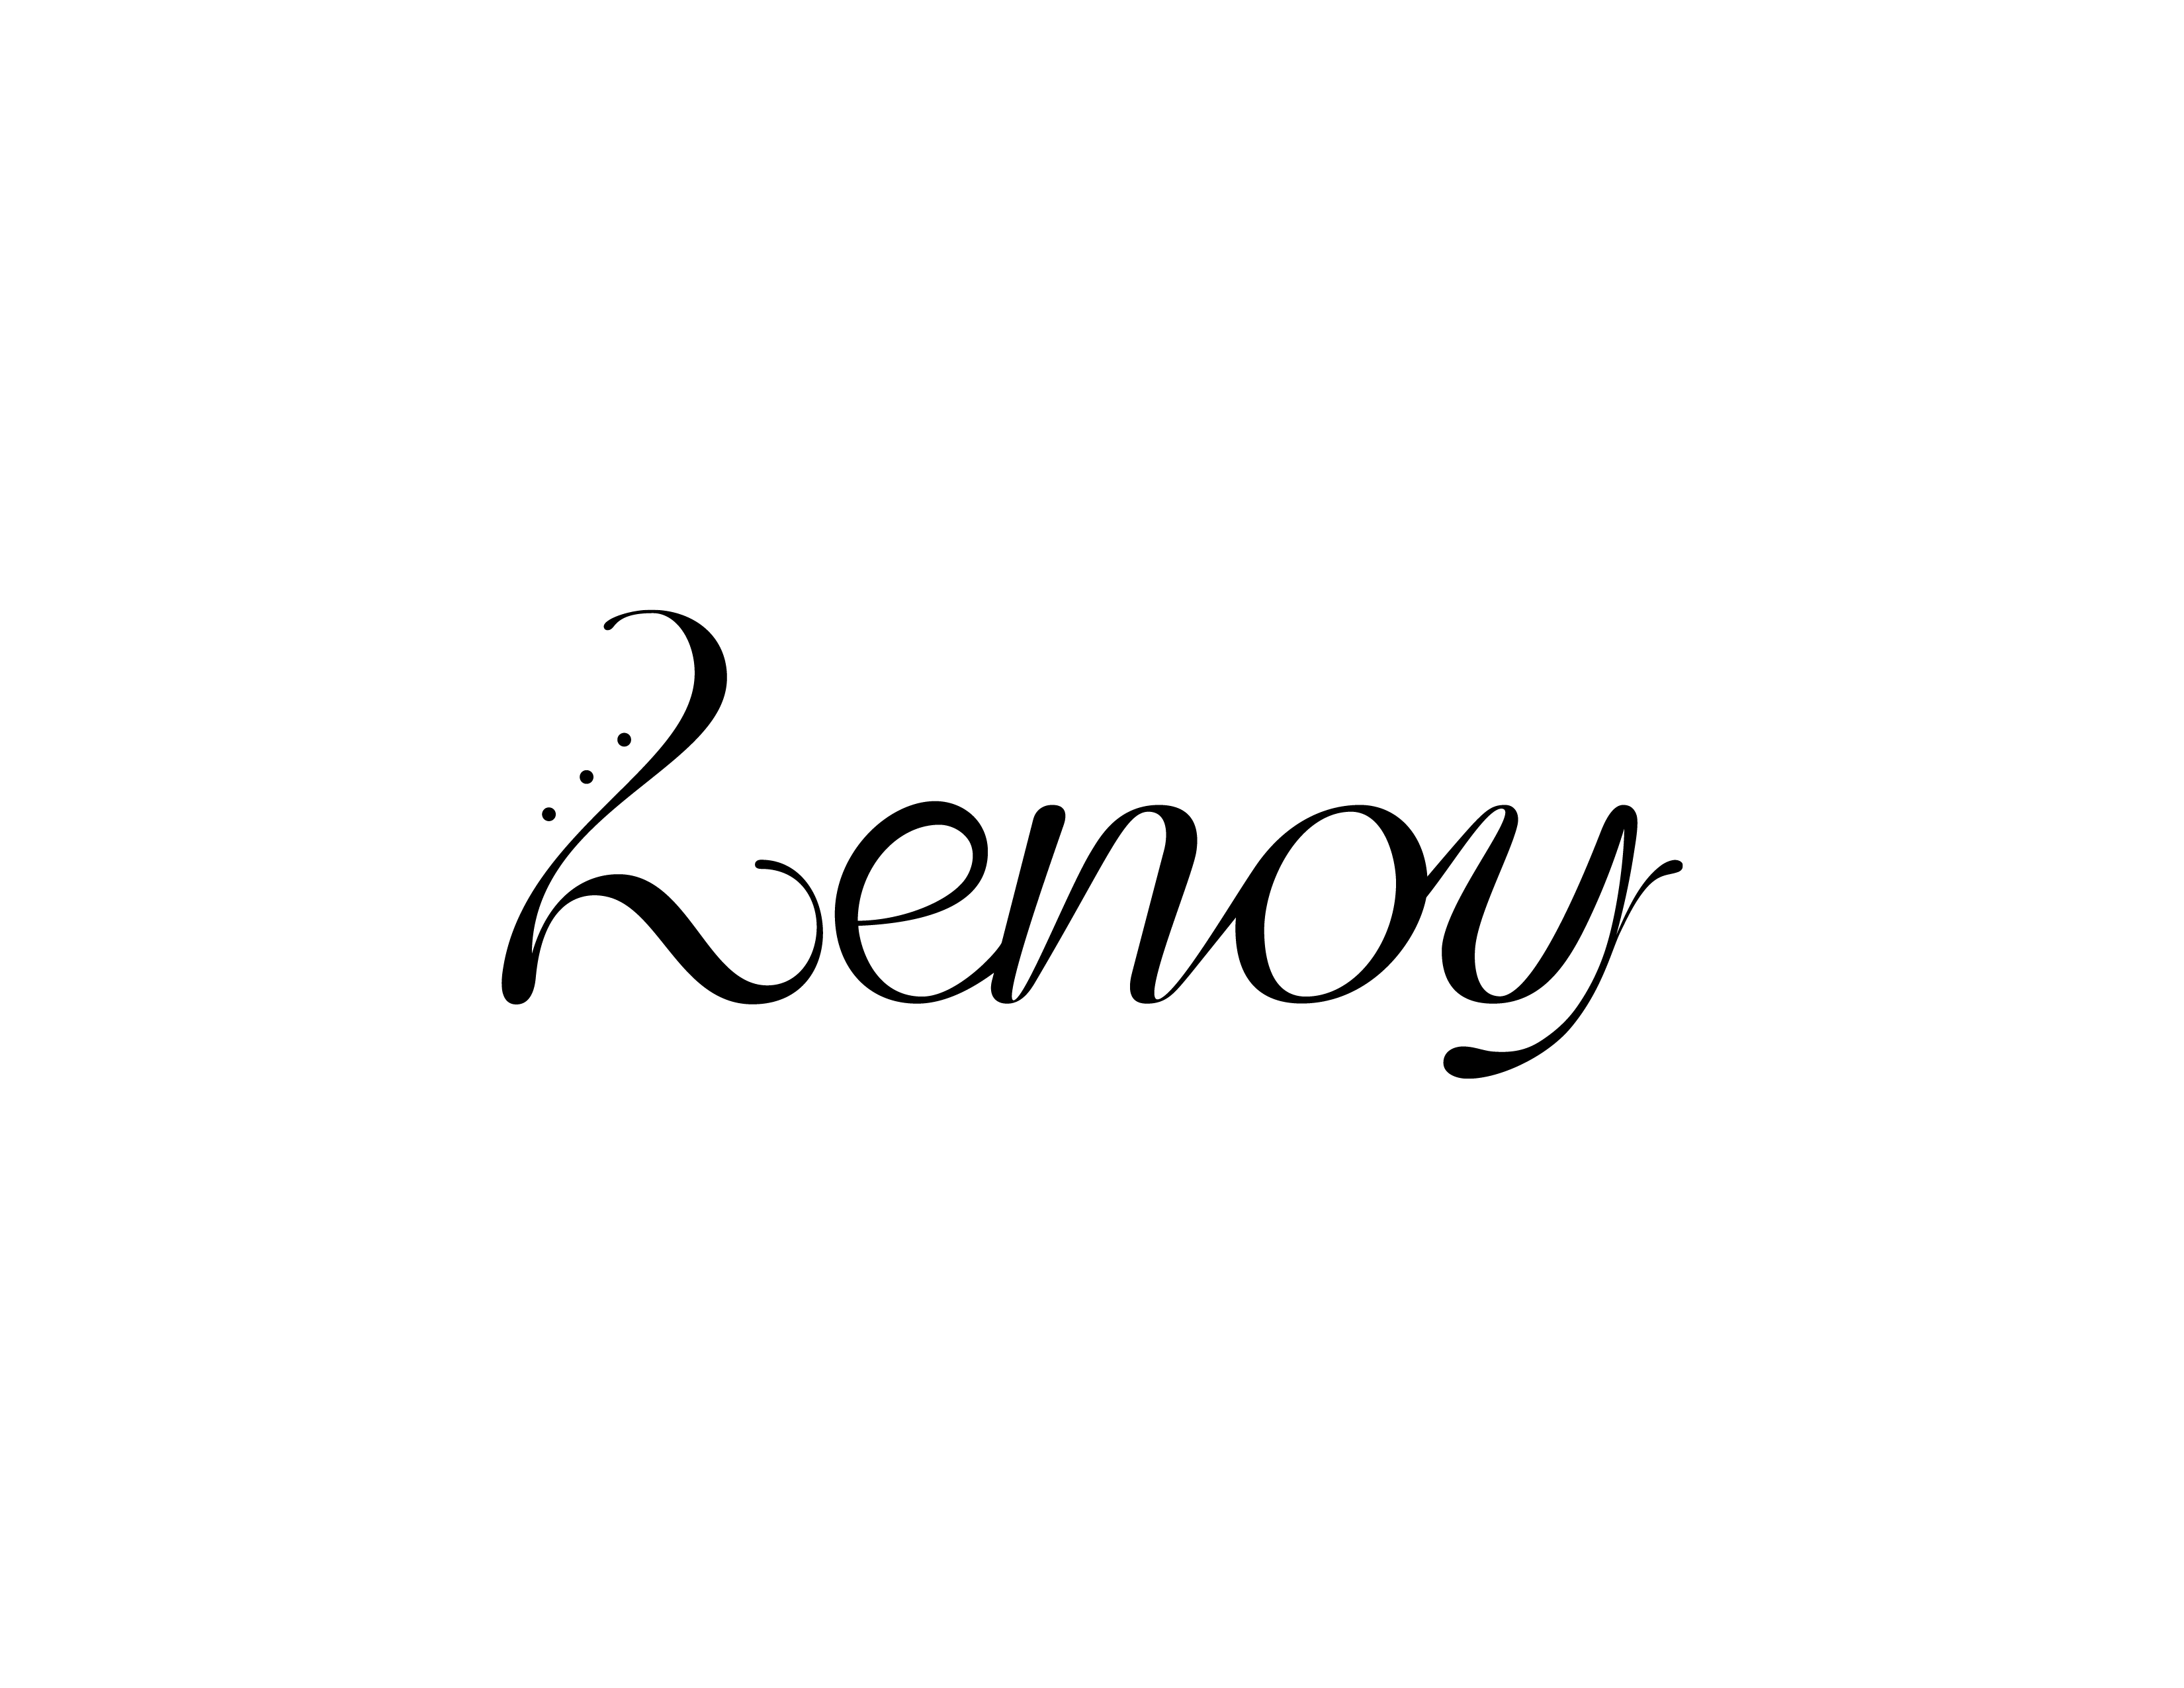 Business logo of LenoyMED at Belleville